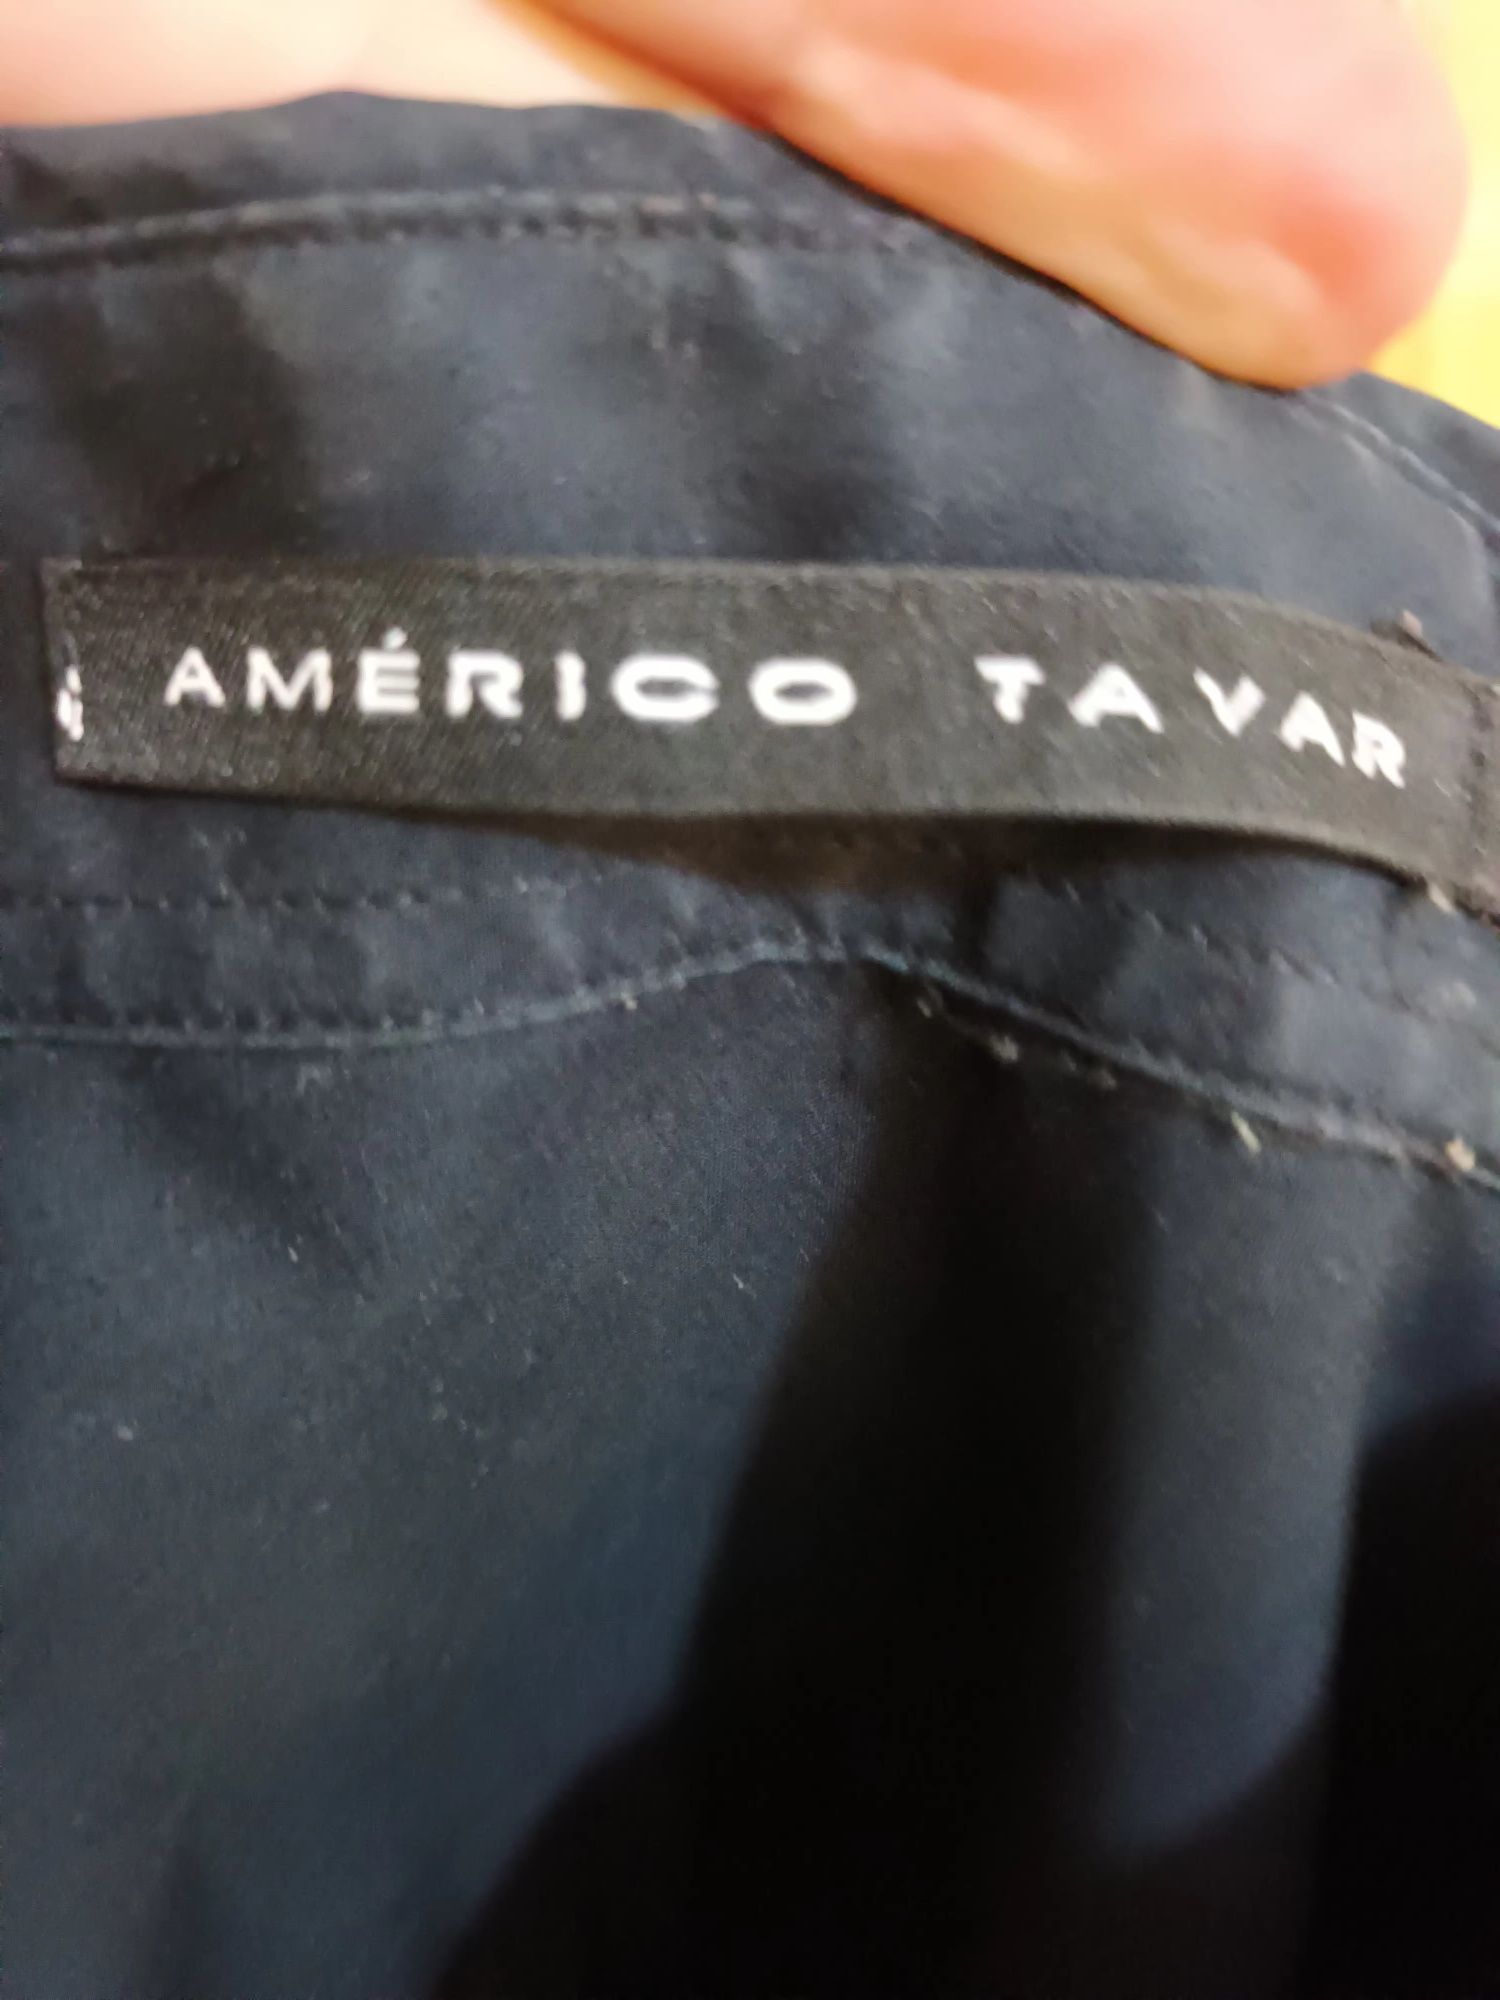 Camisa preta com bordado, Américo Tavar